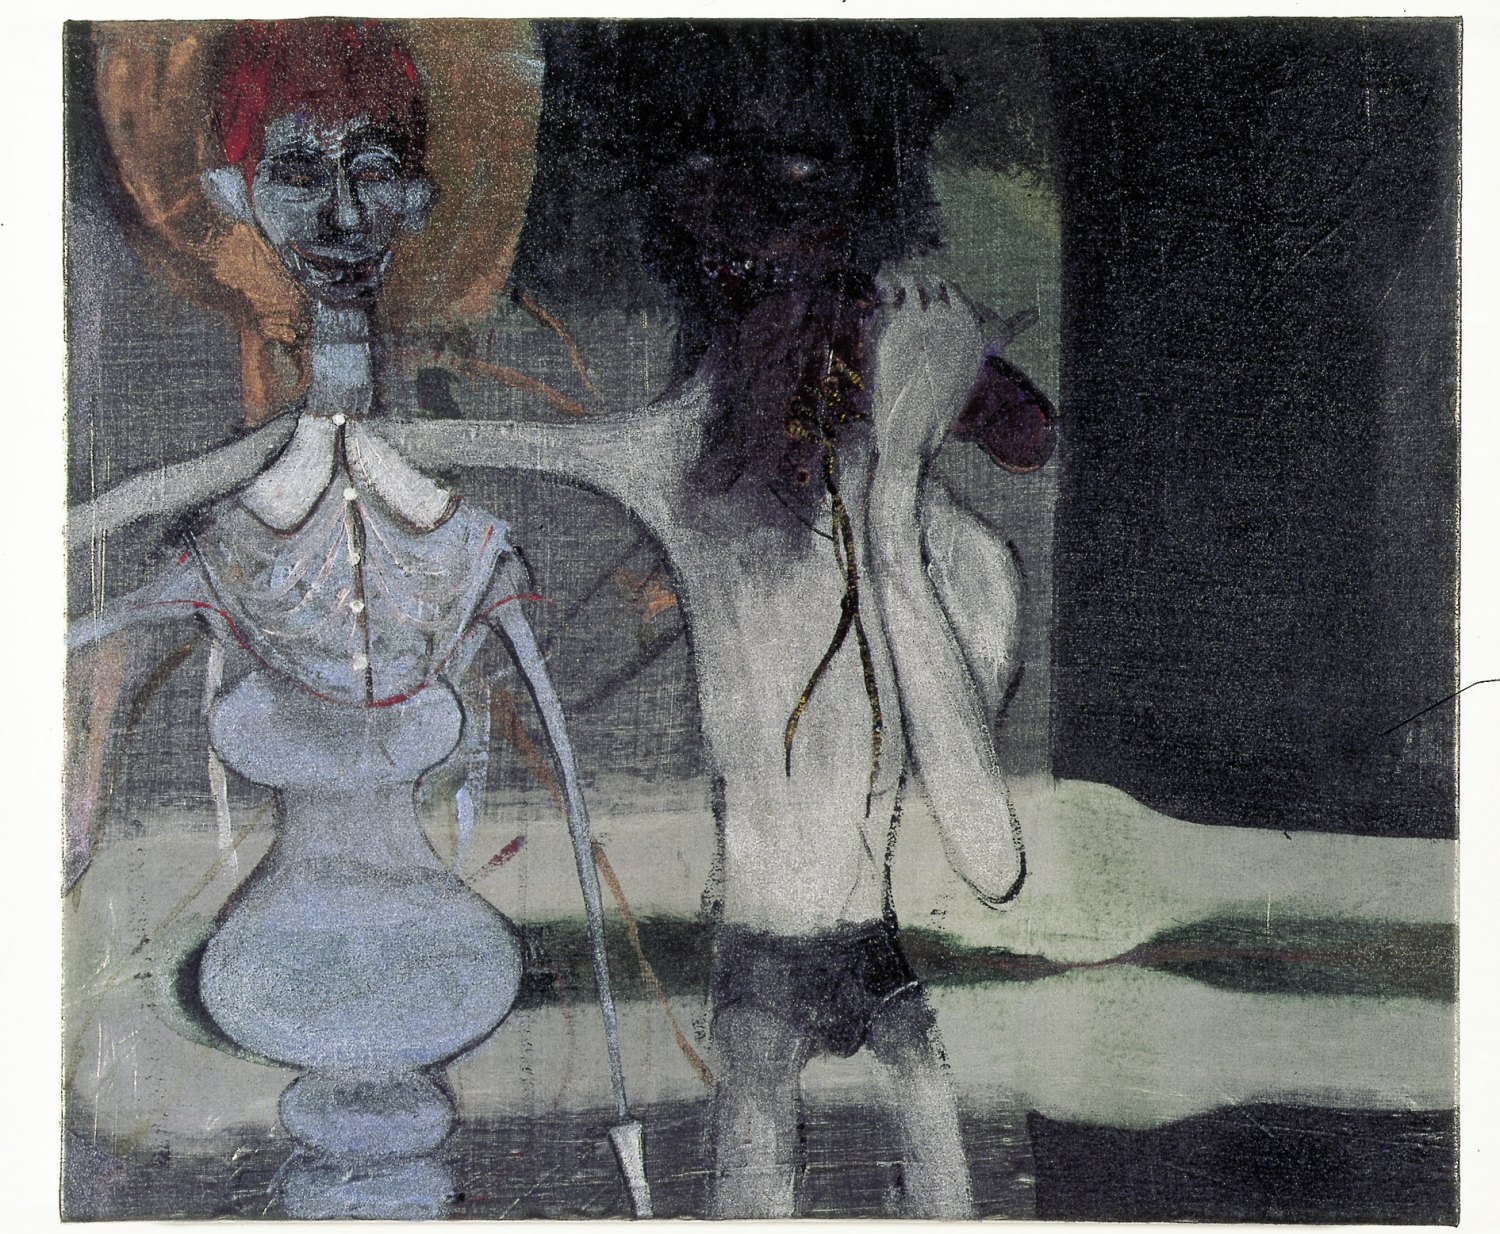 Kai Althoff Freunde, wie ihr sie nie kennen werdet, zu Eurem Schaden, 2002 Metallic fabric paint, spar varnish, varnish on canvas, 60 × 70 × 4.5 cm